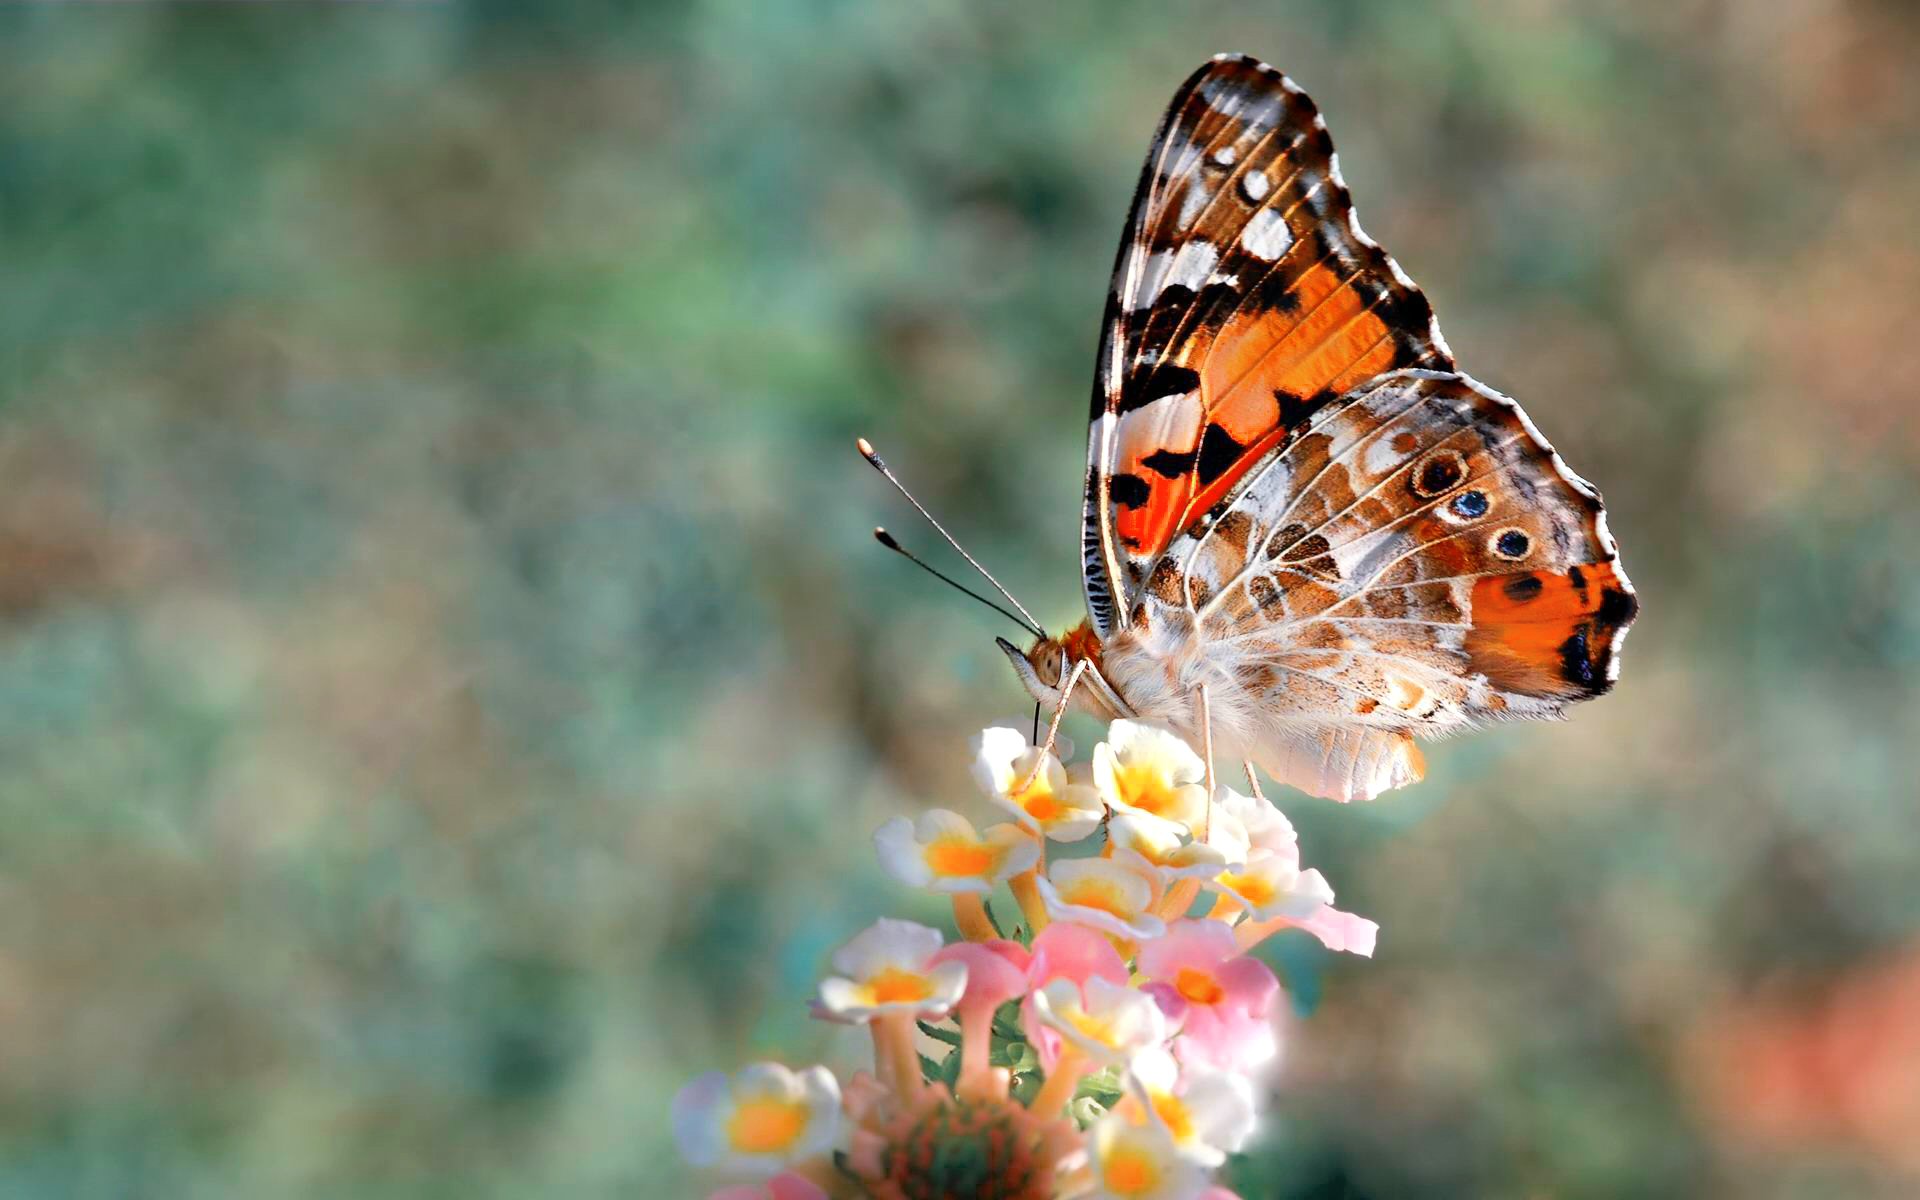 farfalla wallpaper hd,falene e farfalle,la farfalla,cynthia subgenus,insetto,farfalla dai piedi a pennello